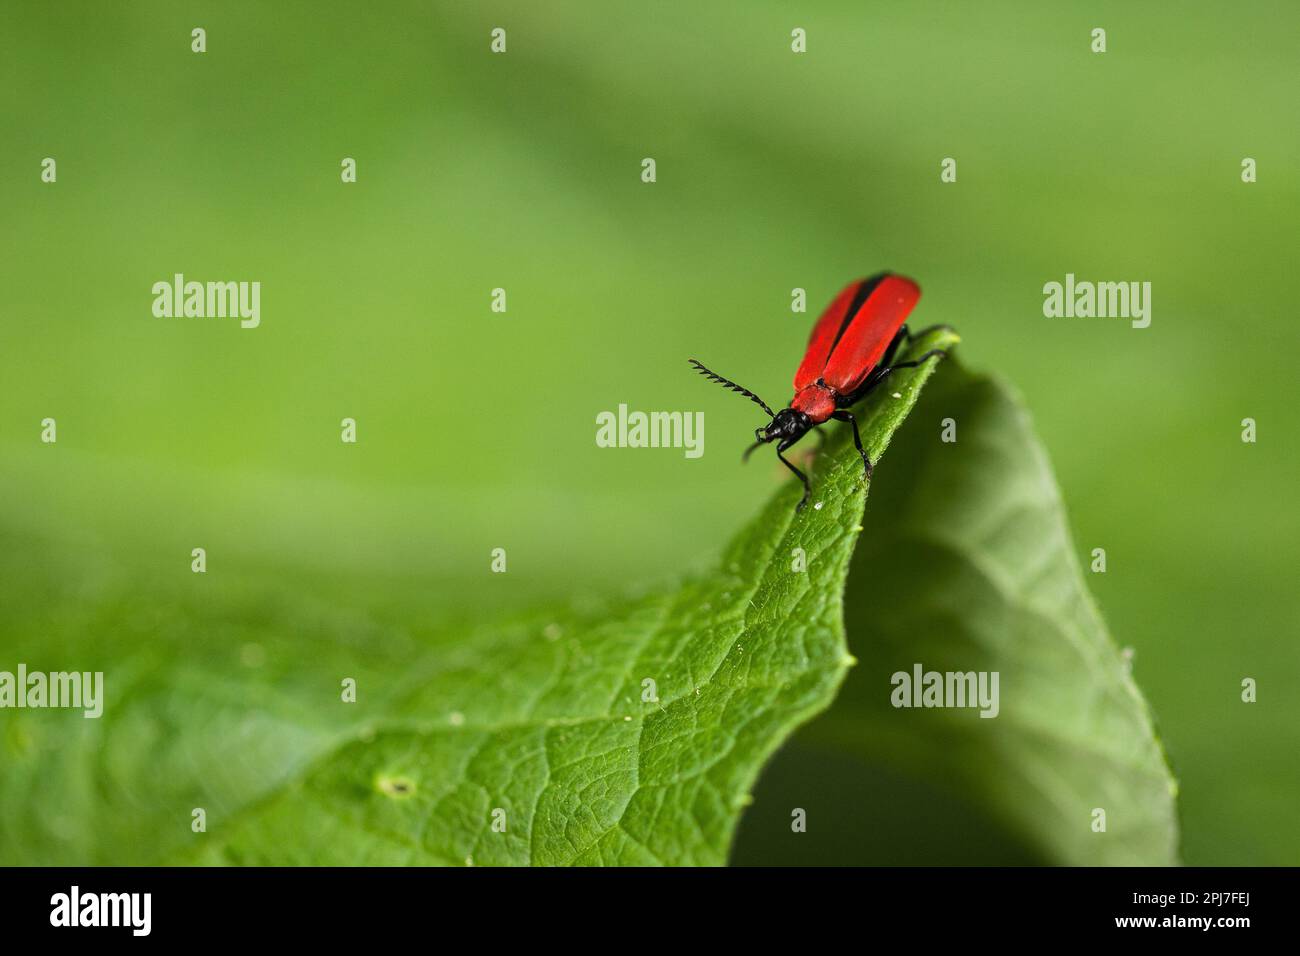 Der auffällige feuerfarbene Käfer sitzt auf der Wölbung eines grünen Blatts. Stockfoto